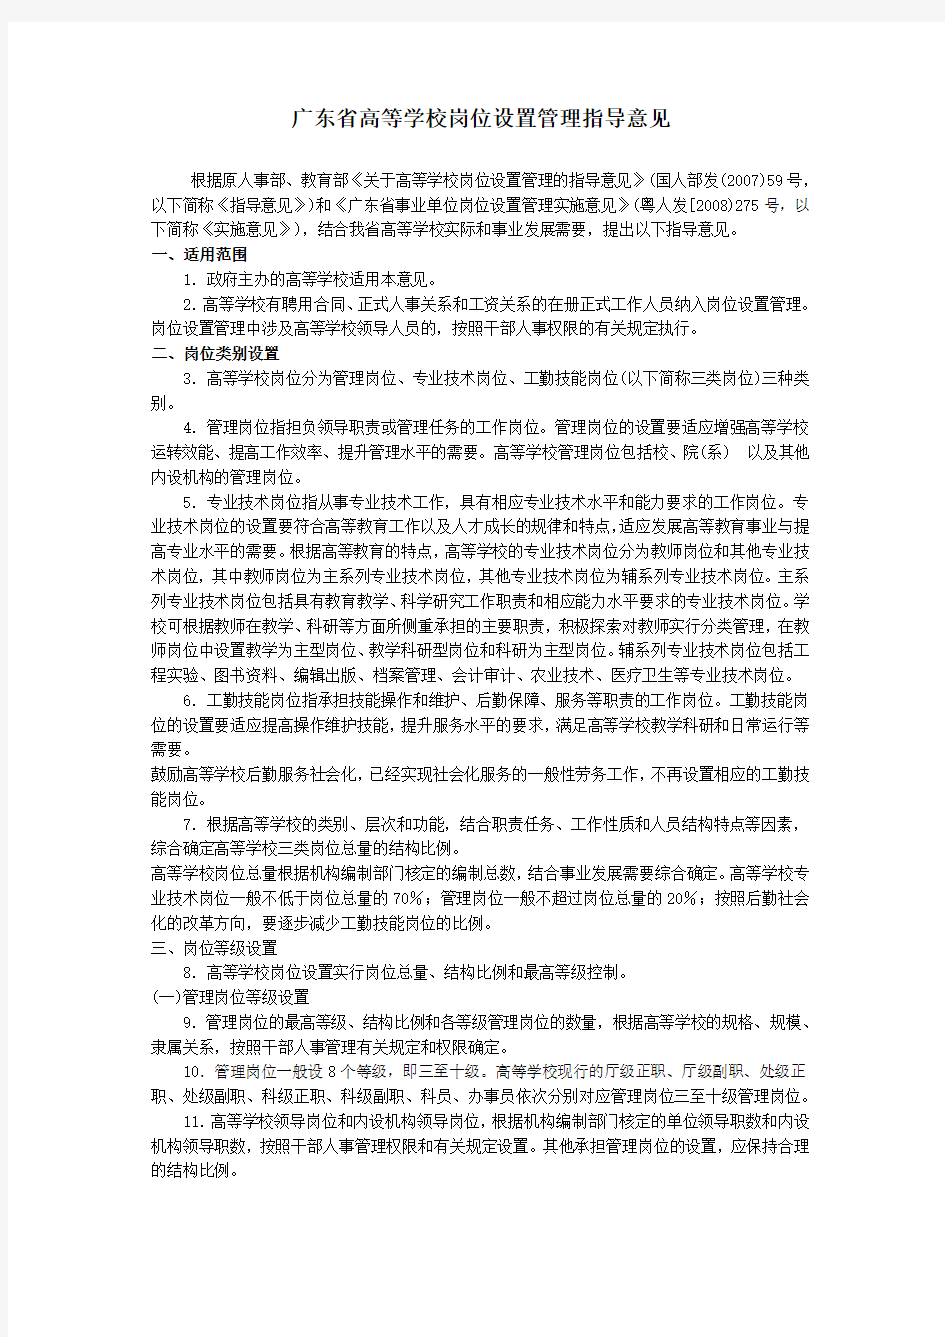 广东省高等学校岗位设置管理指导意见